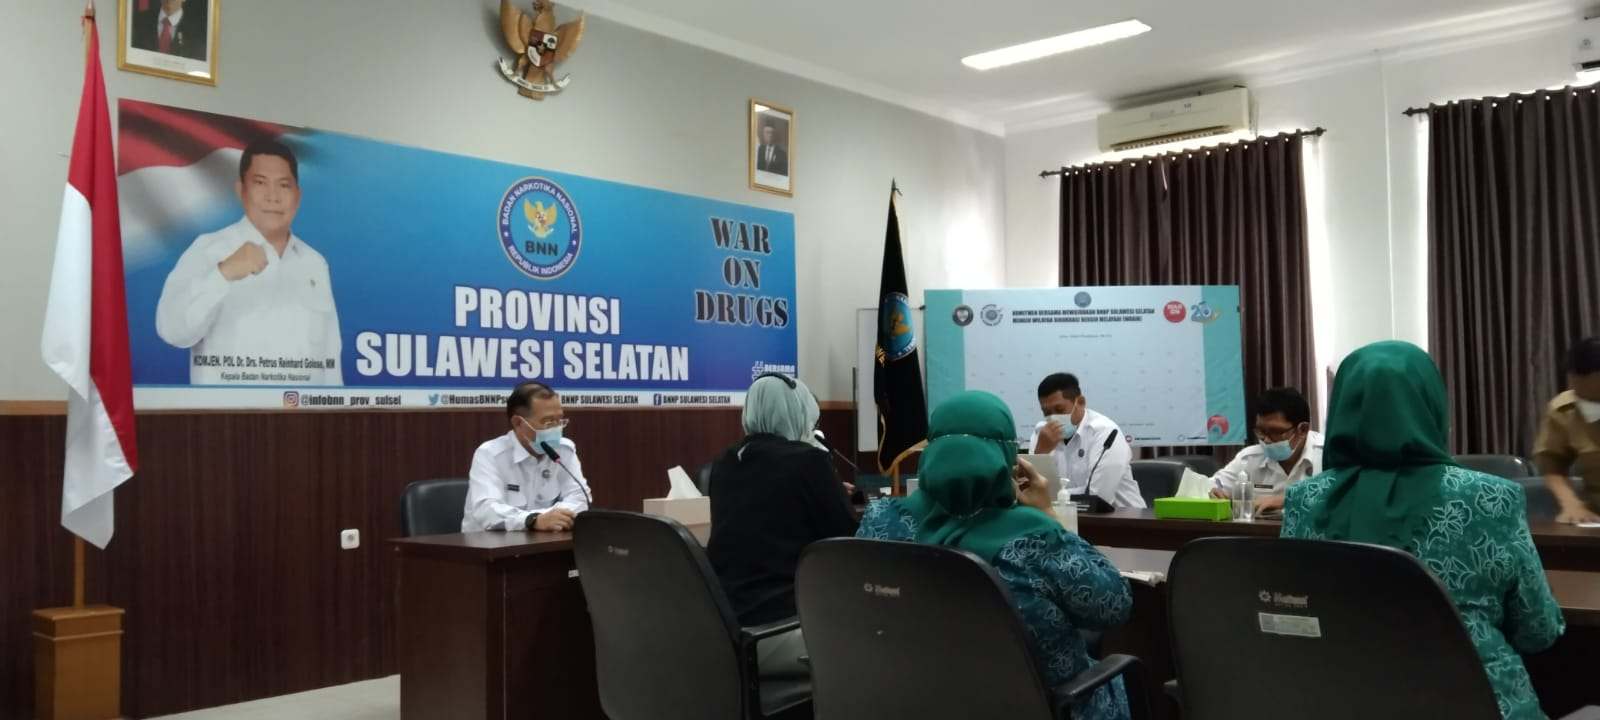 Pada rapat koordinasi yang dilakukan Badan Narkotika Nasional Provinsi Sulawesi Selatan (BNNP Sulsel)